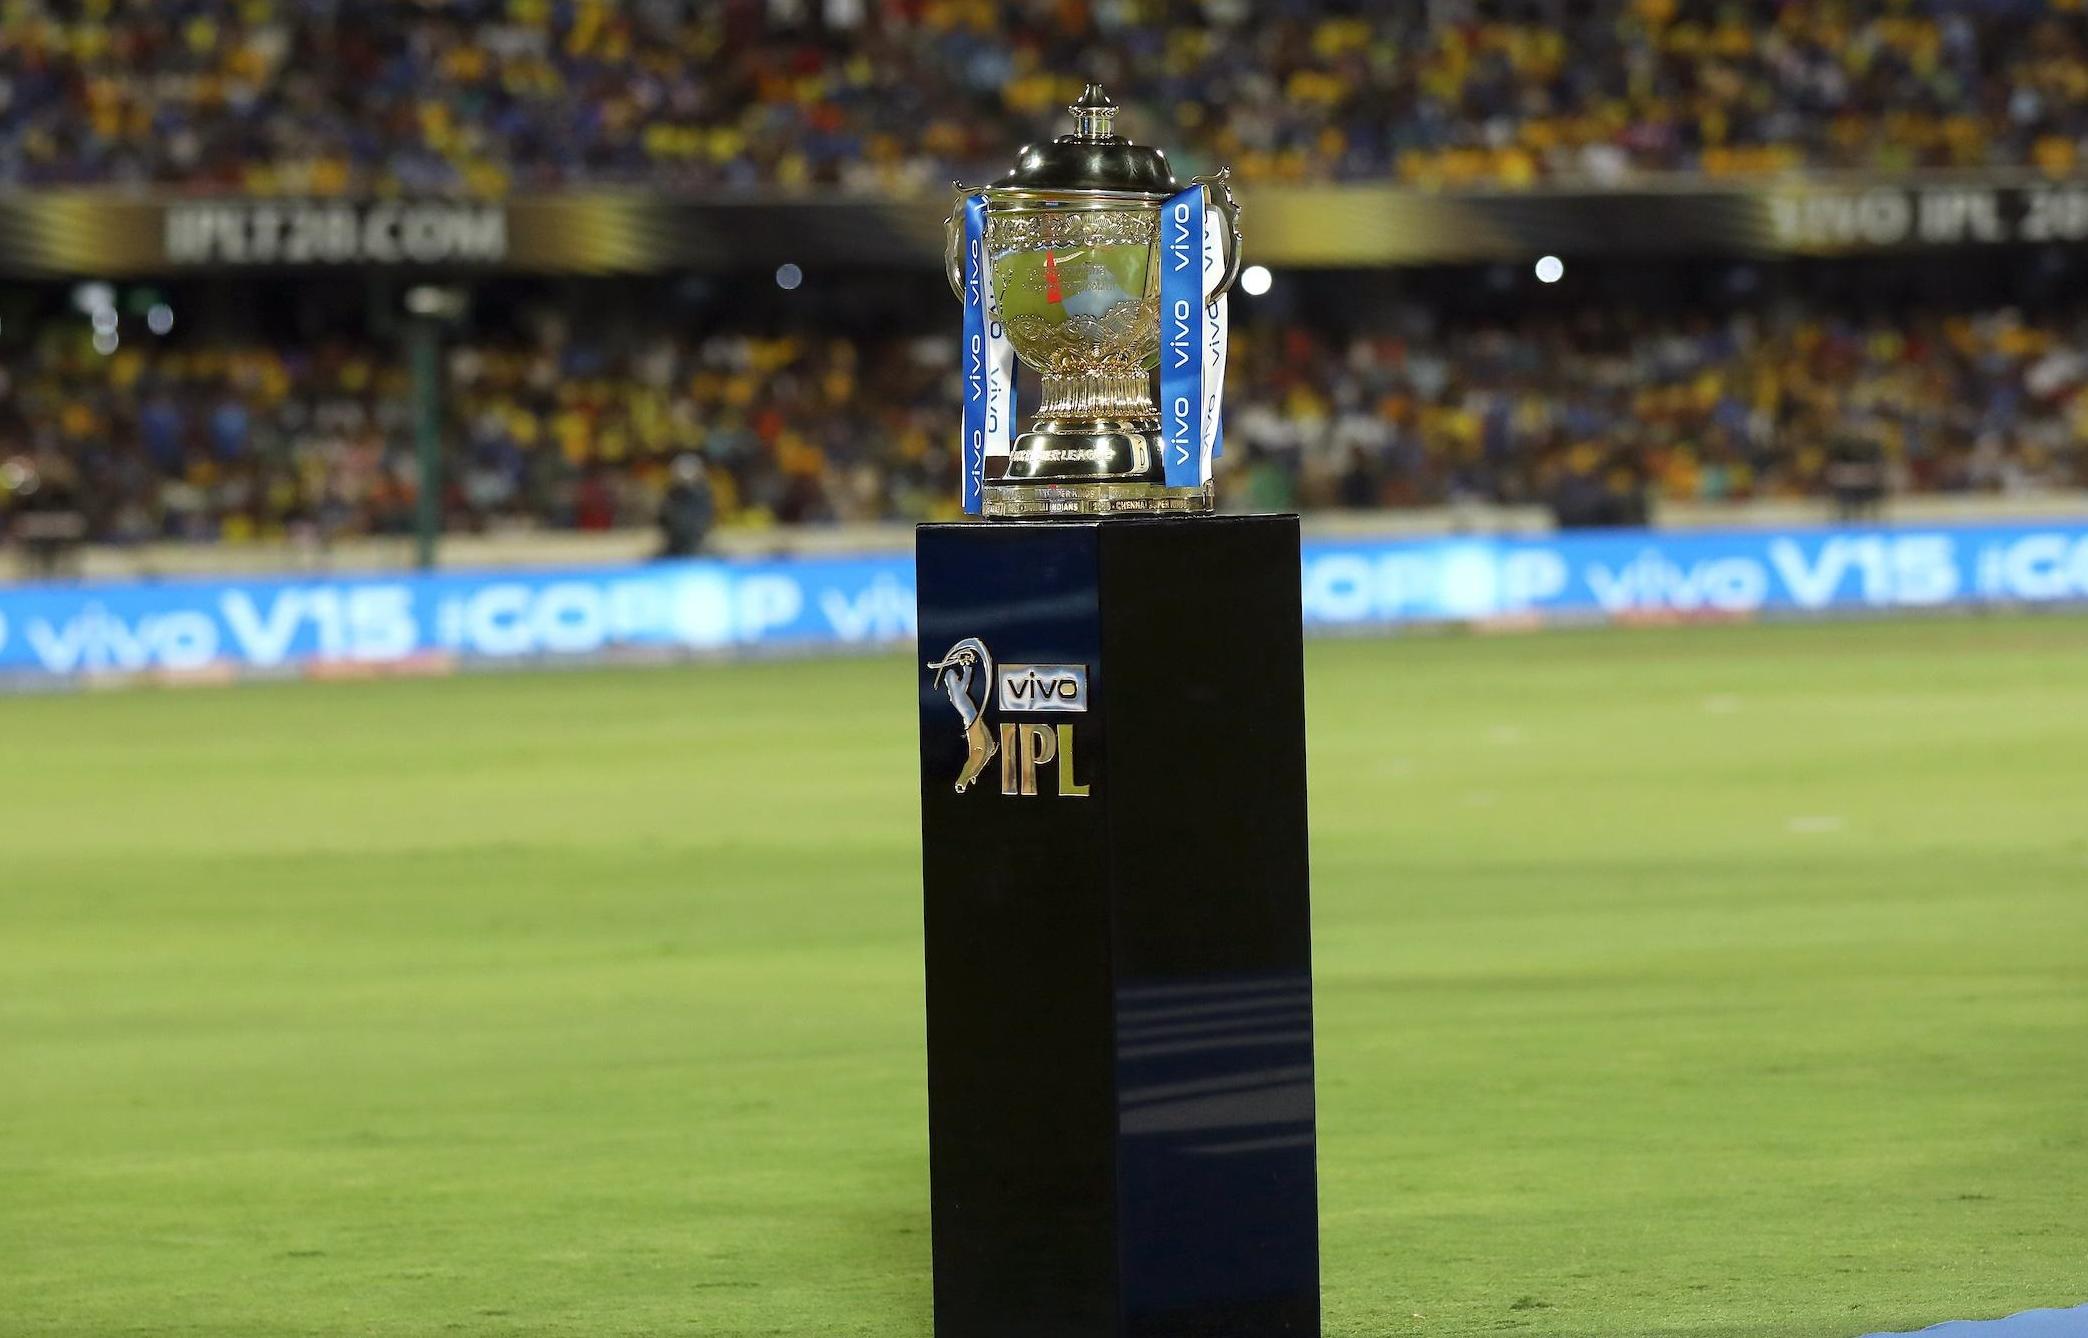  बड़ी चुनौतियों के बीच IPL 2021 के बचे मैचों की तारीखों का हो सकता है ऐलान